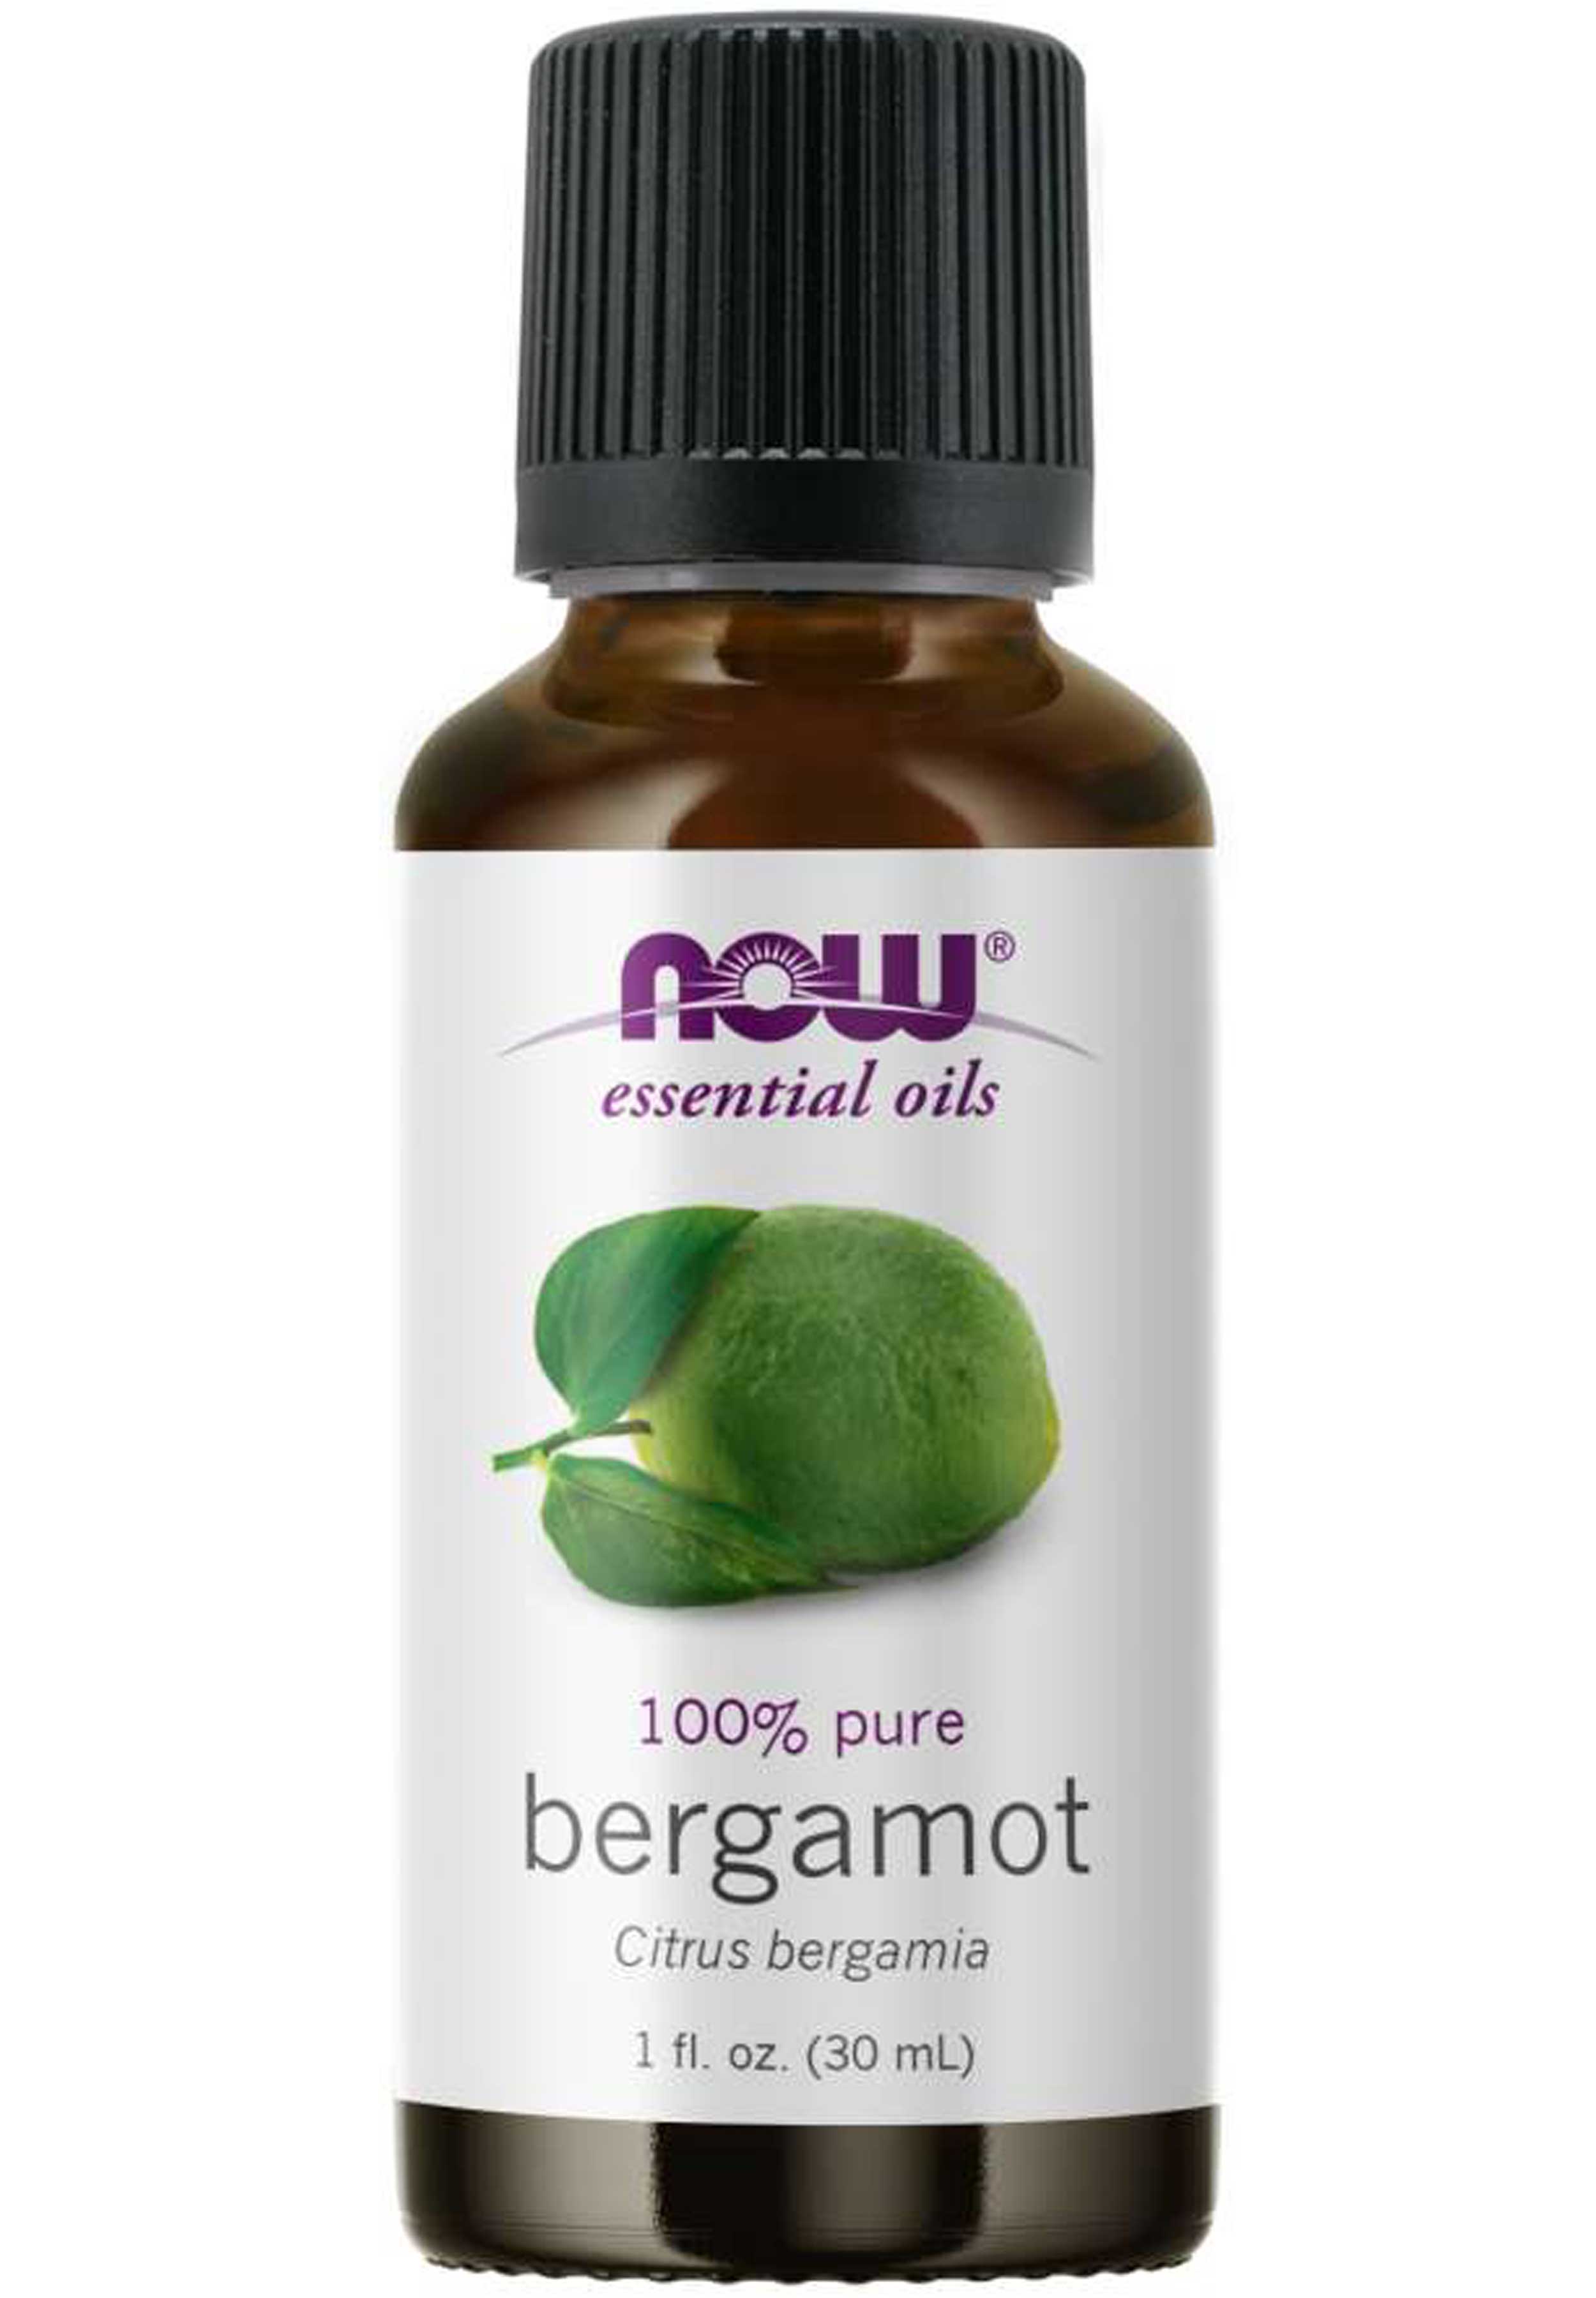 NOW Essential Oils Bergamot Oil